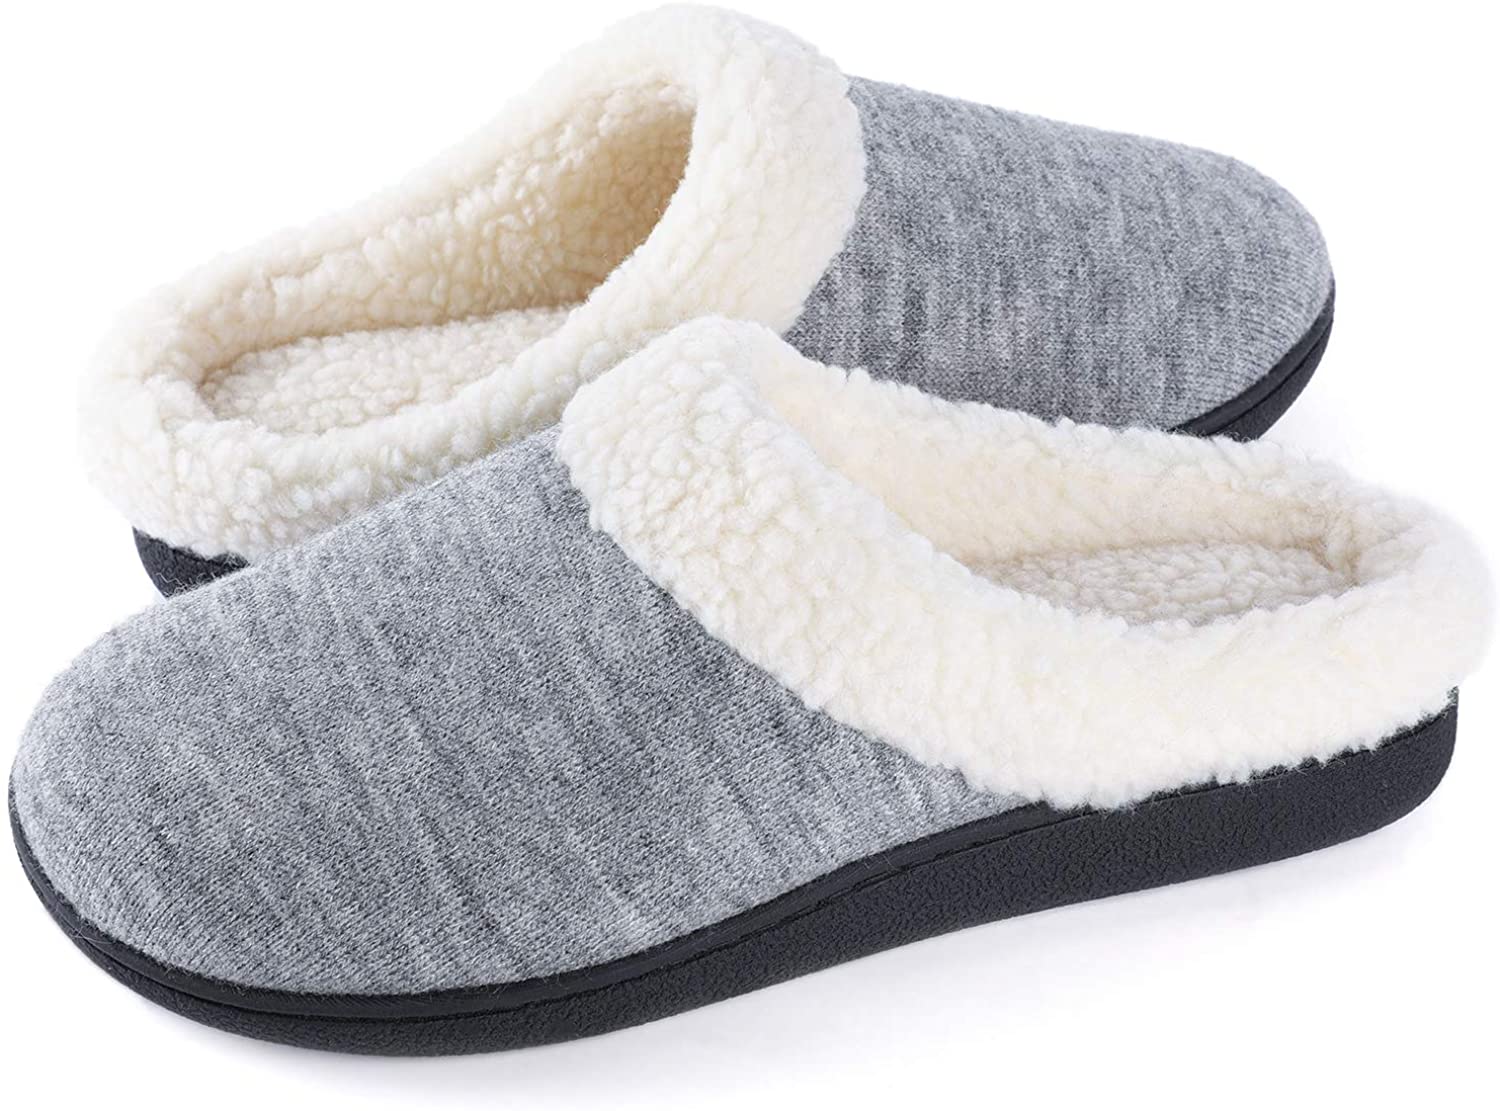 Women's Cozy Memory Foam Slippers Fuzzy Wool-Like Plush